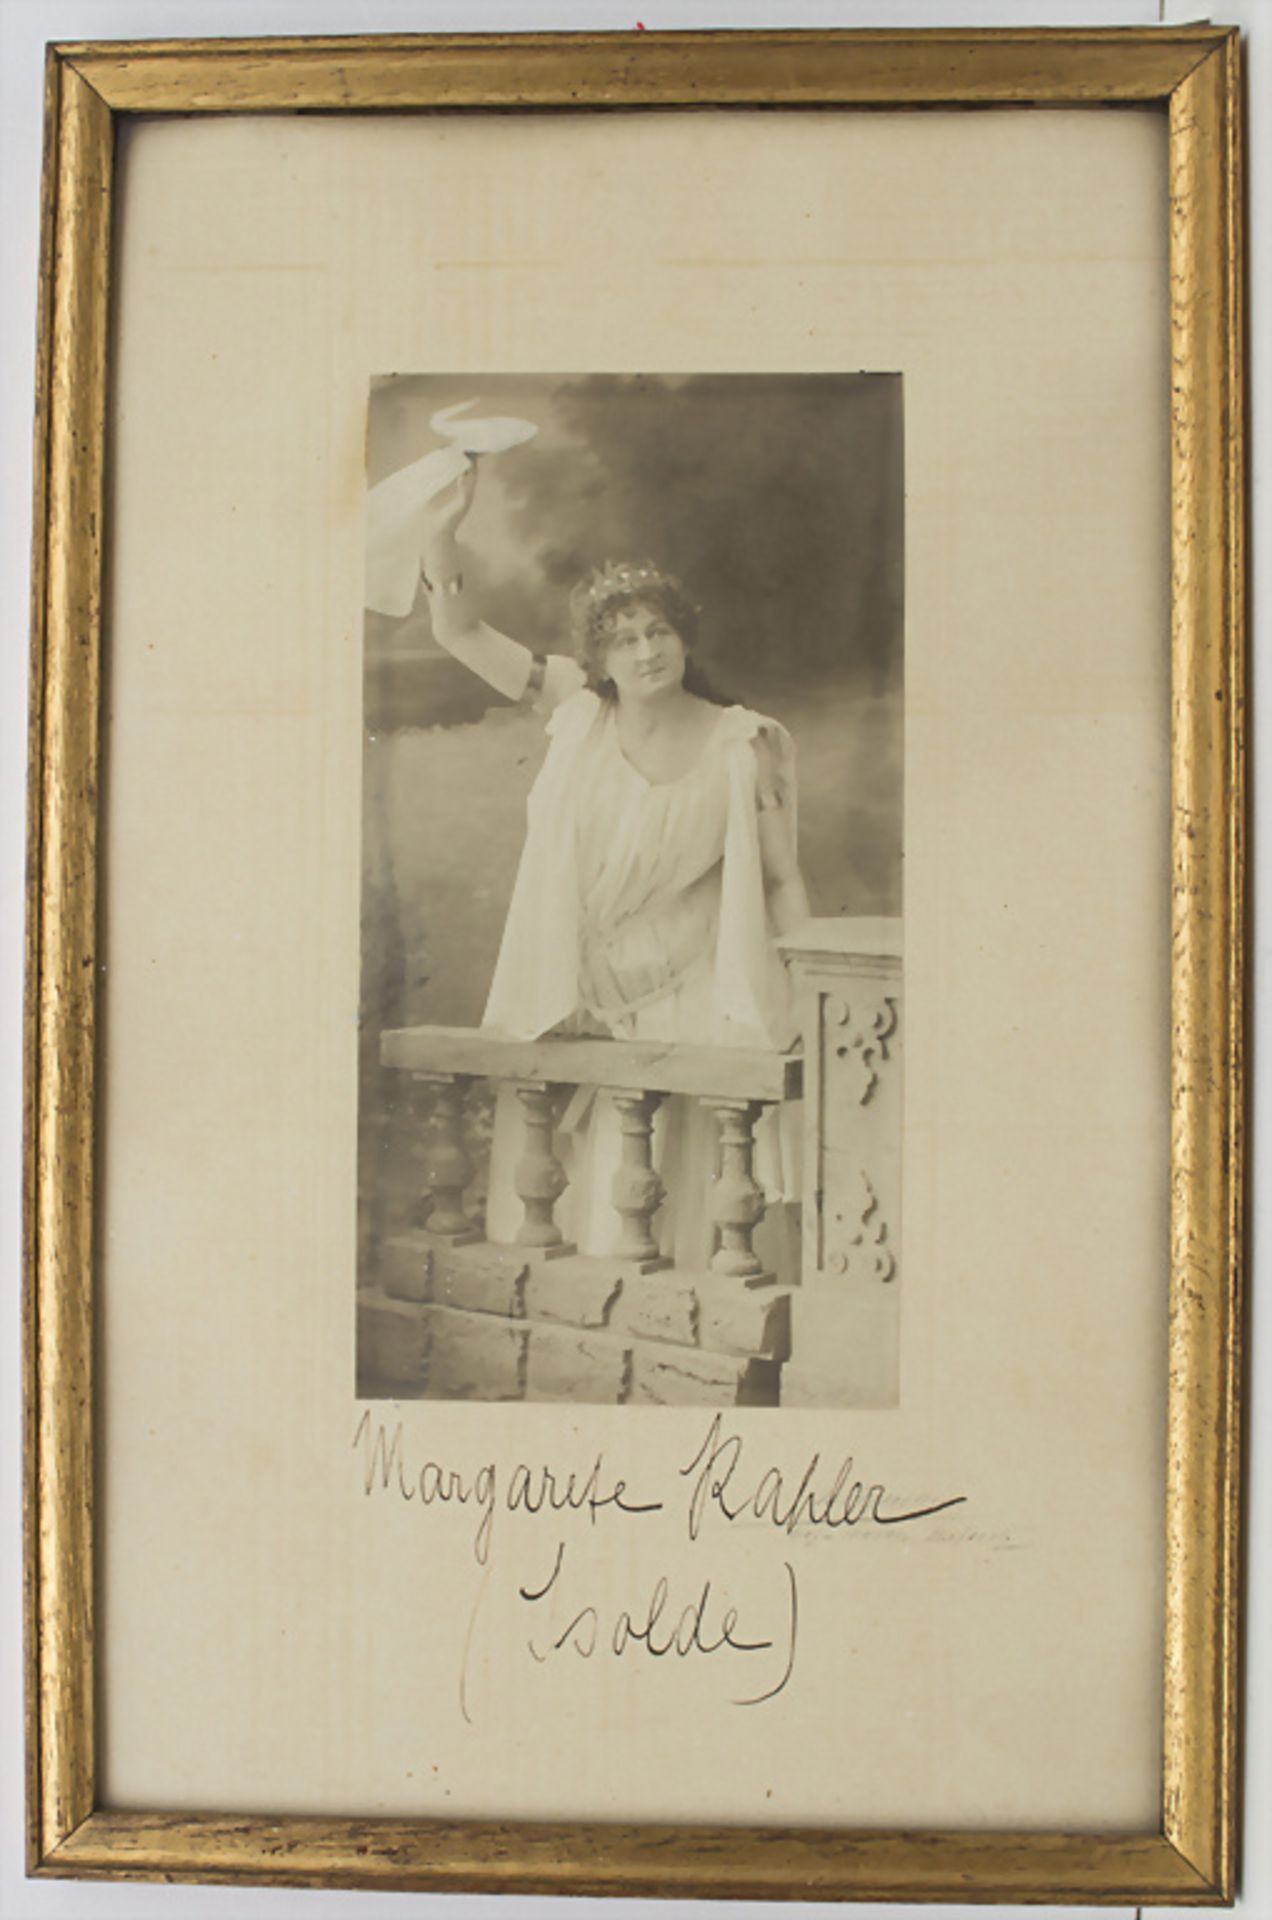 Historische Fotografie 'Margarete Kahler' / A historic photograph of Margarete Kahler - Image 2 of 2